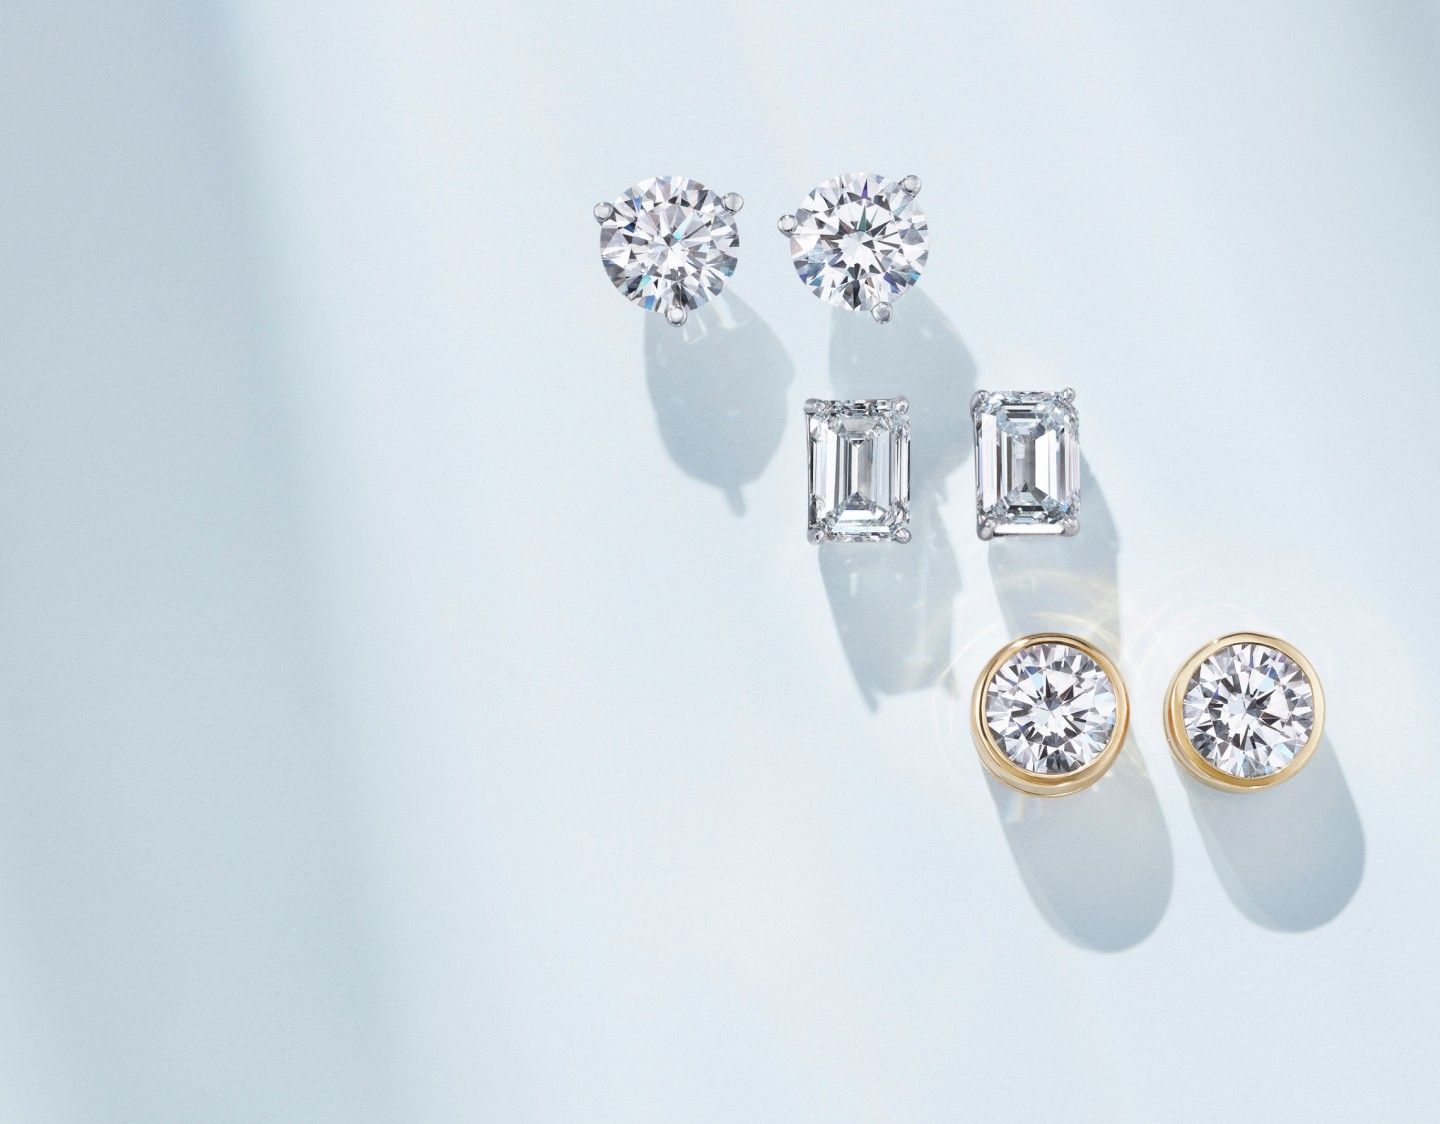 Diamond stud earrings in a variety of settings.